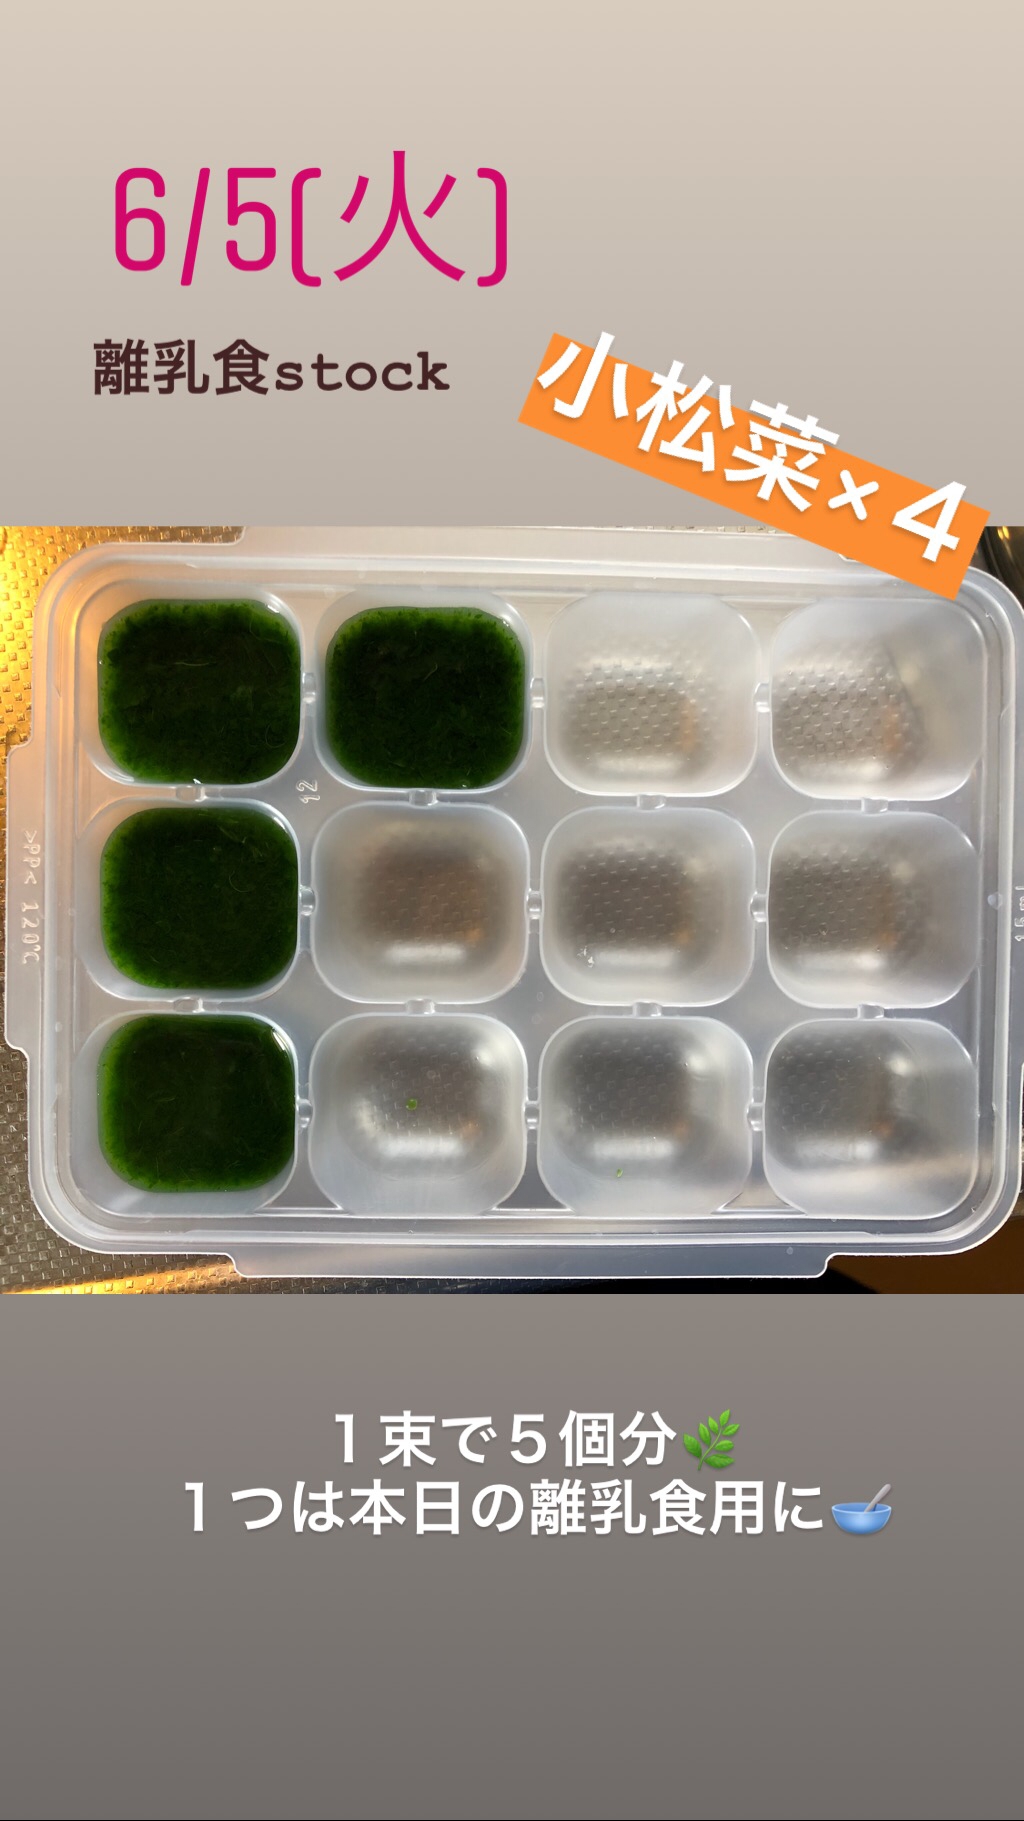 離乳食初期☆小松菜ストック